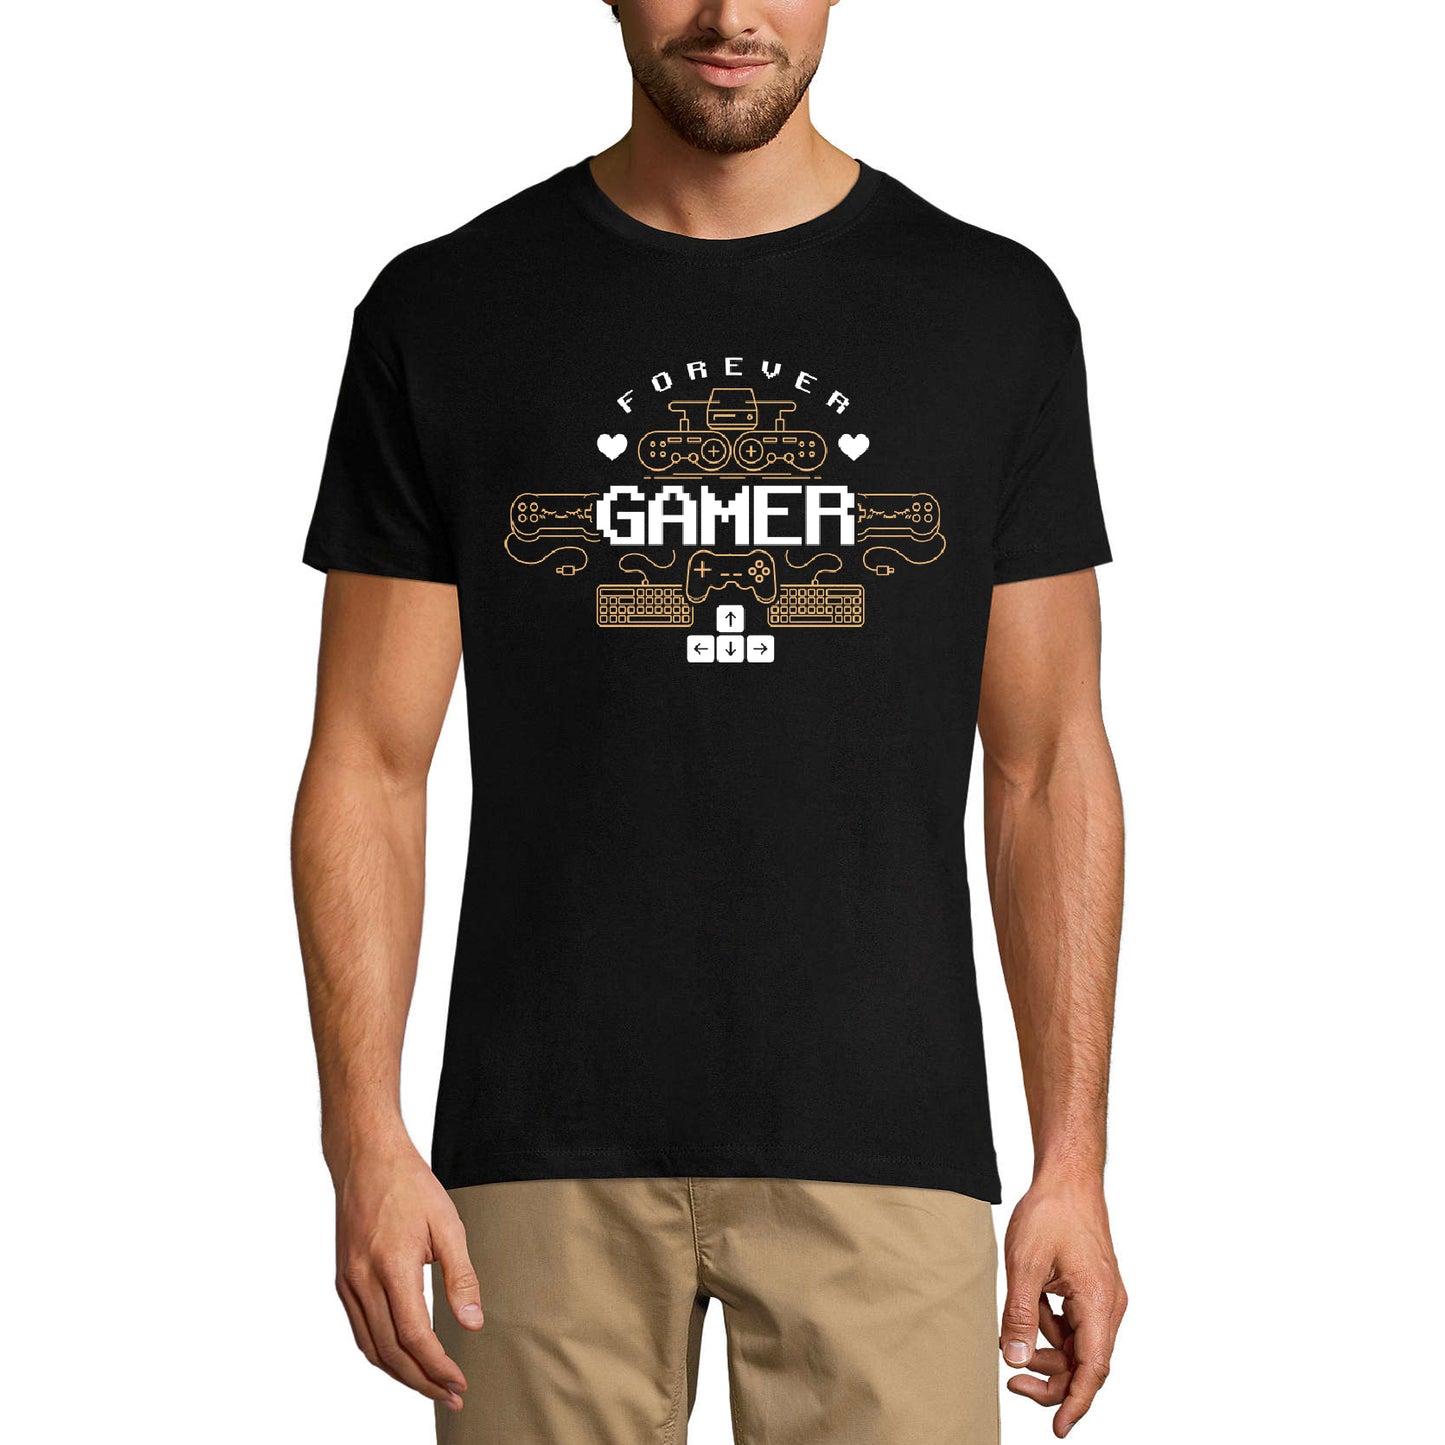 ULTRABASIC Graphic Men's T-Shirt Forever Gamer - Gaming Shirt - Gamer Life